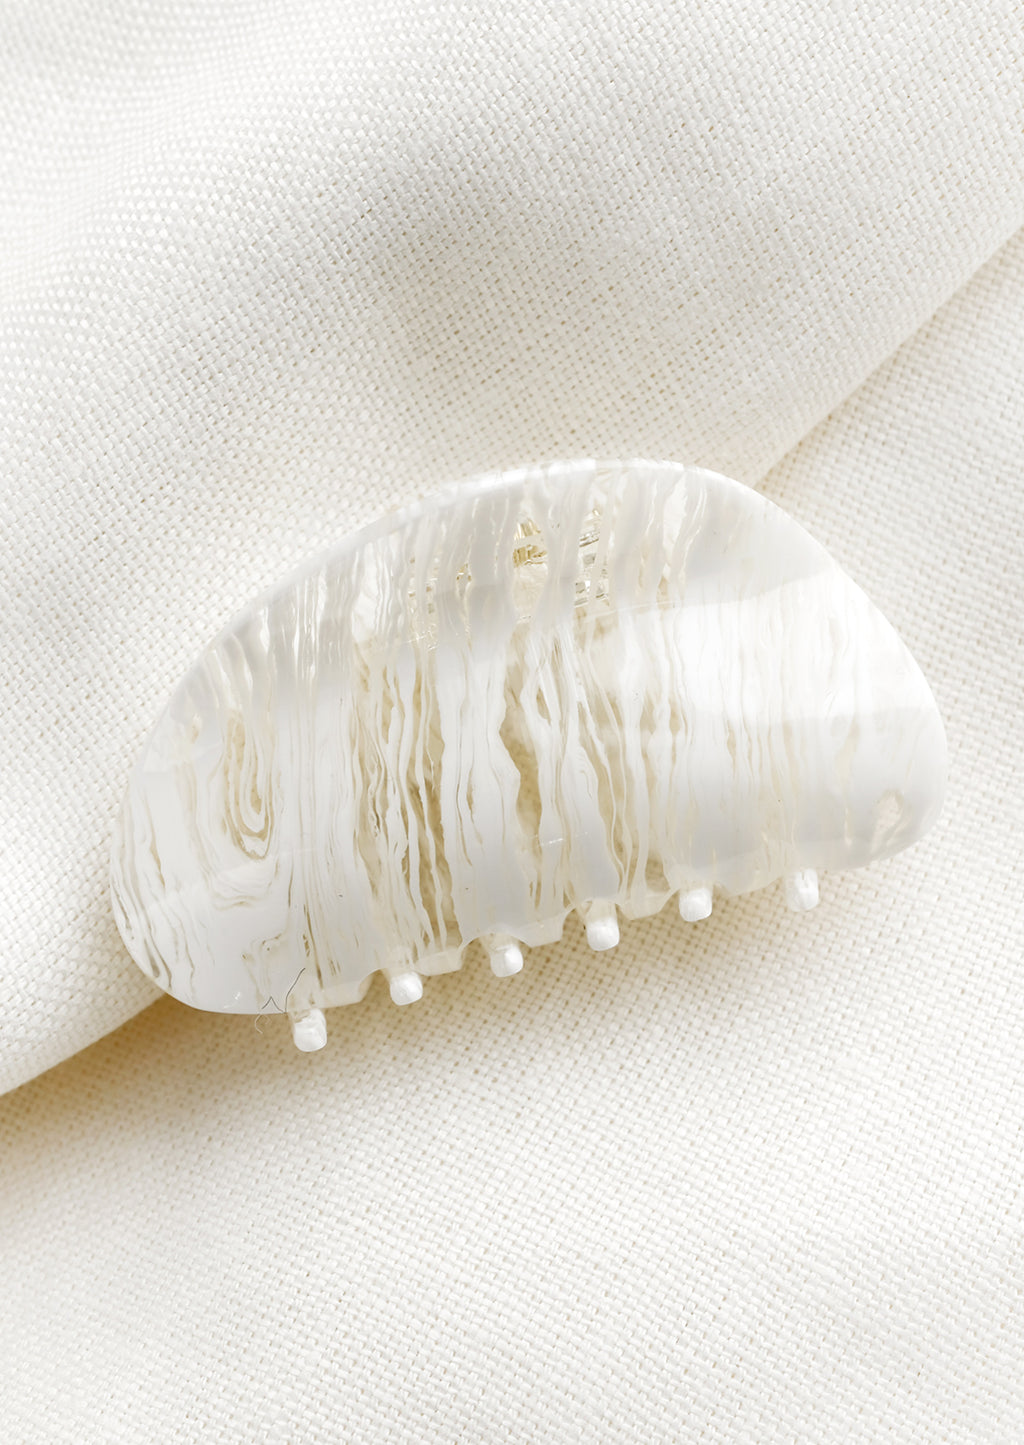 White: An asymmetric hair claw in white streak print.